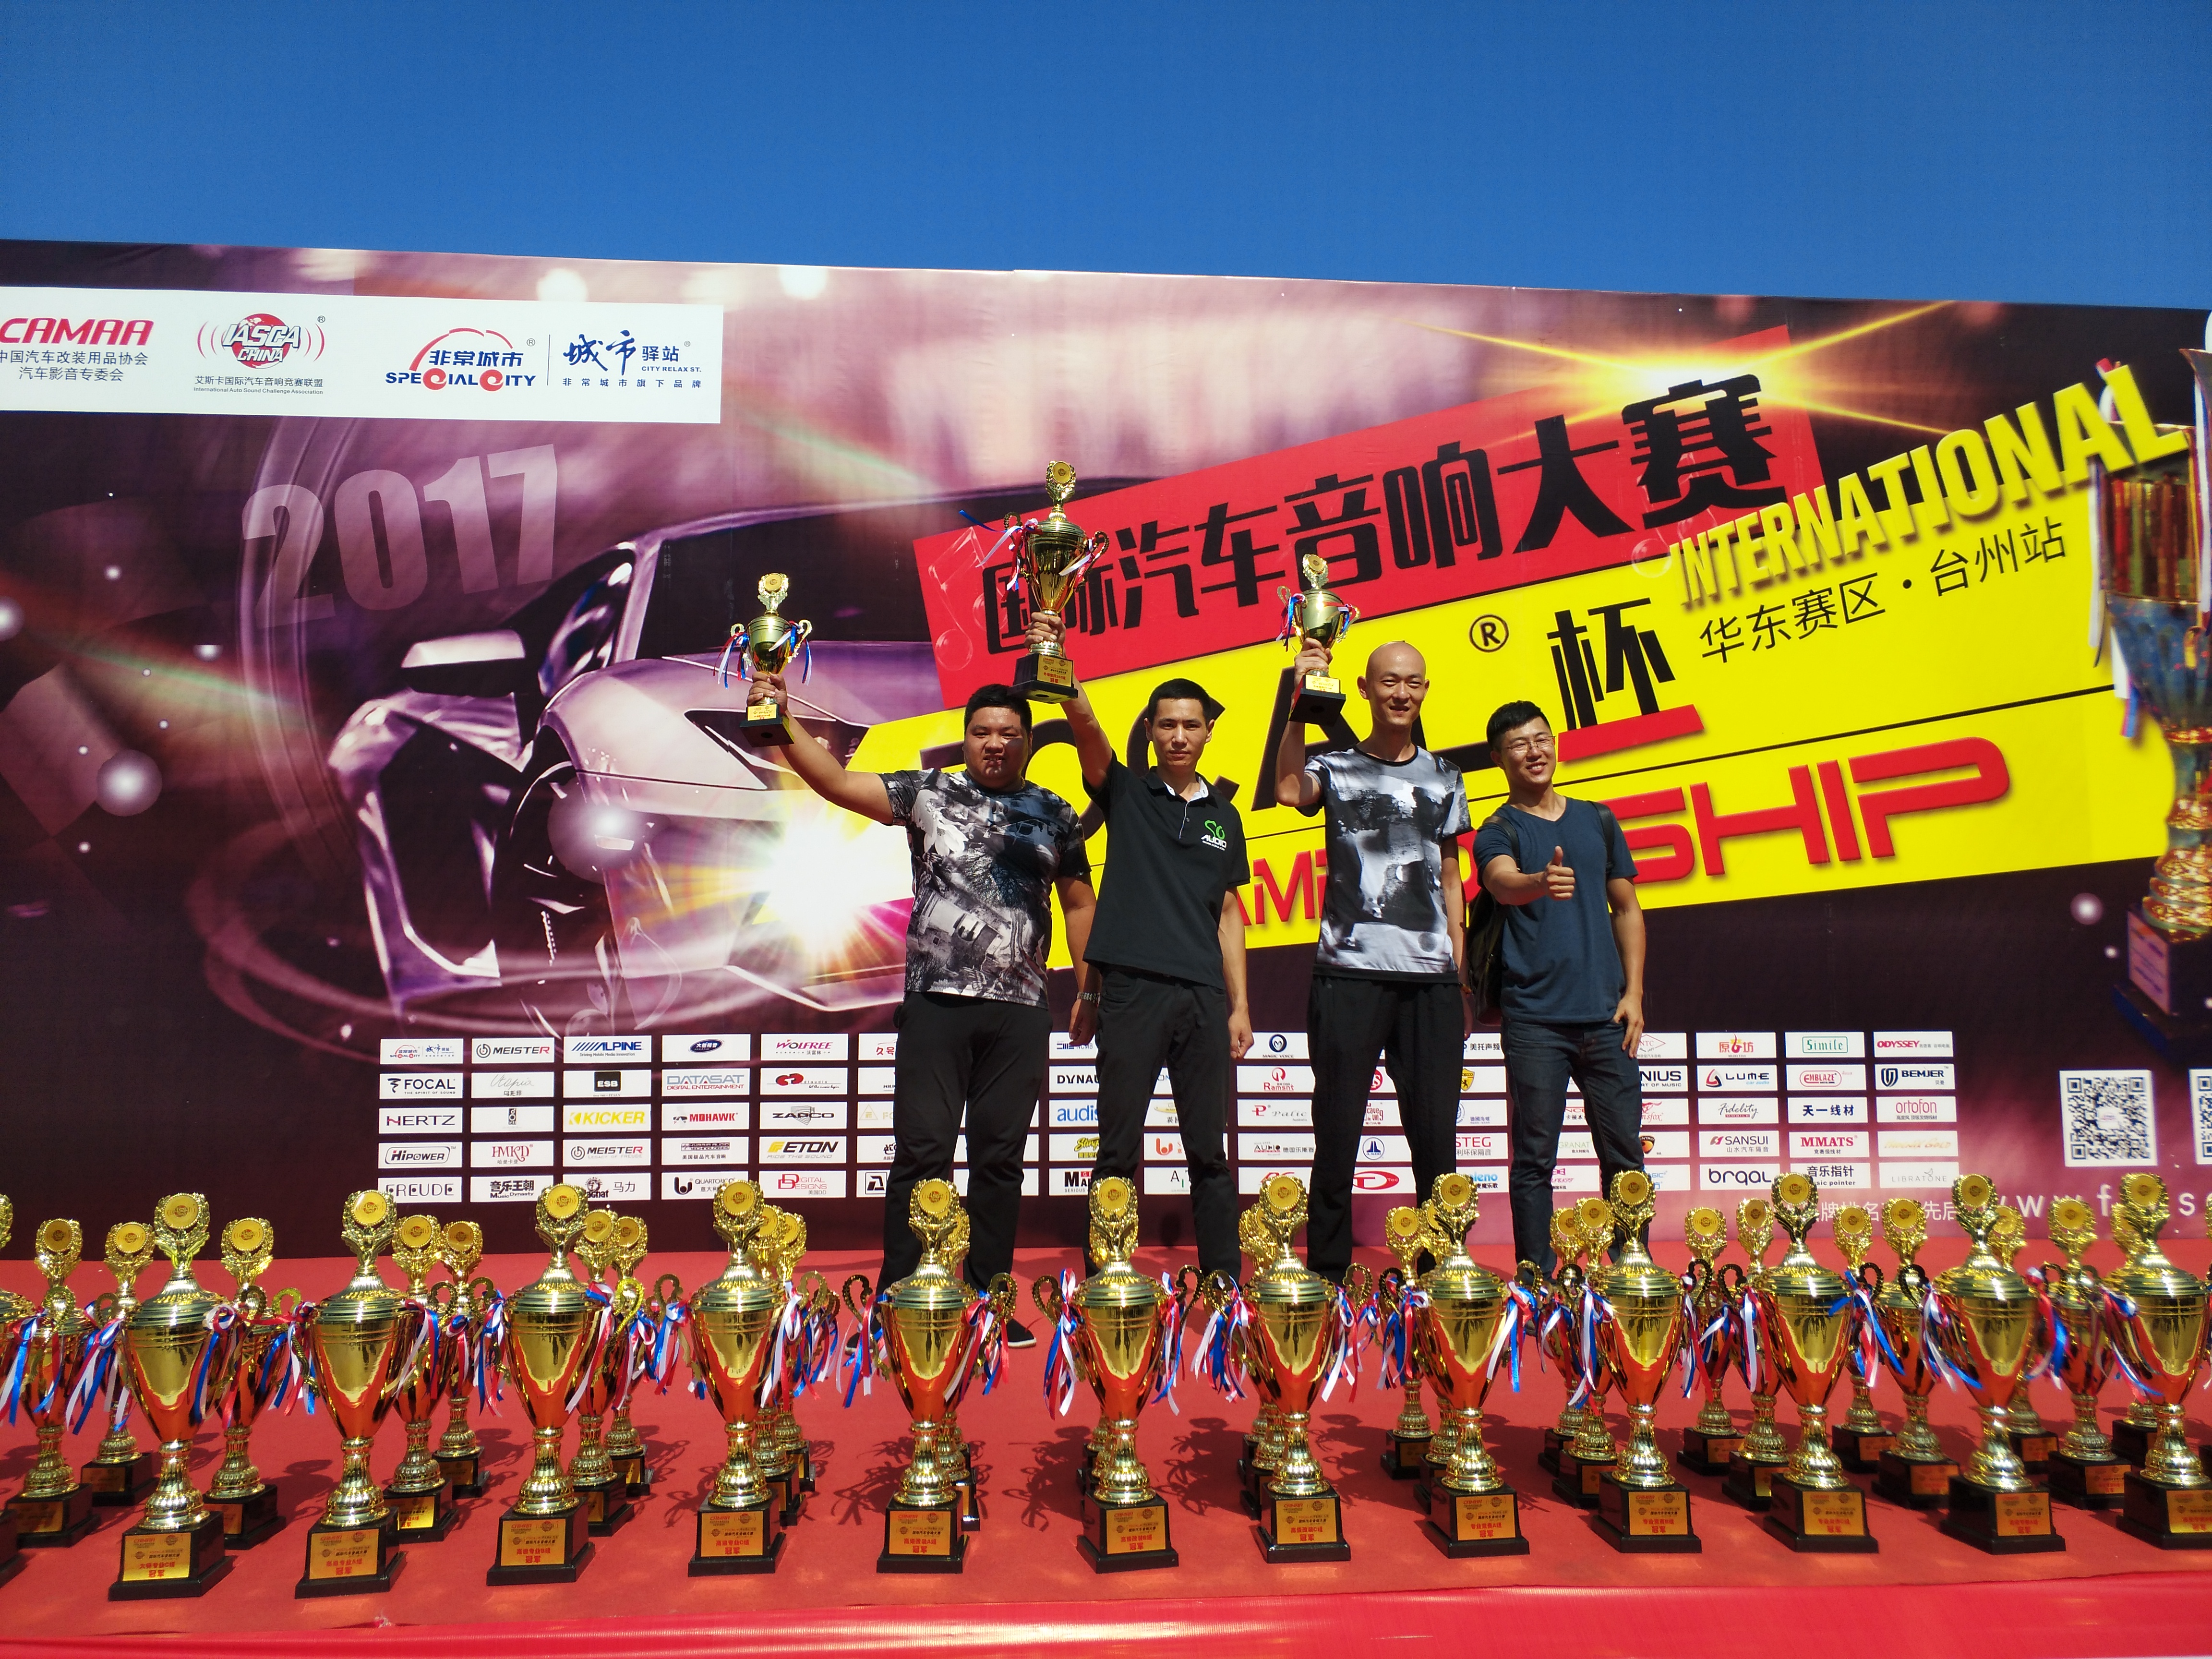 2017艾斯卡汽車音響大賽臺州站  包攬 外場聲壓 冠軍,季軍兩座獎杯